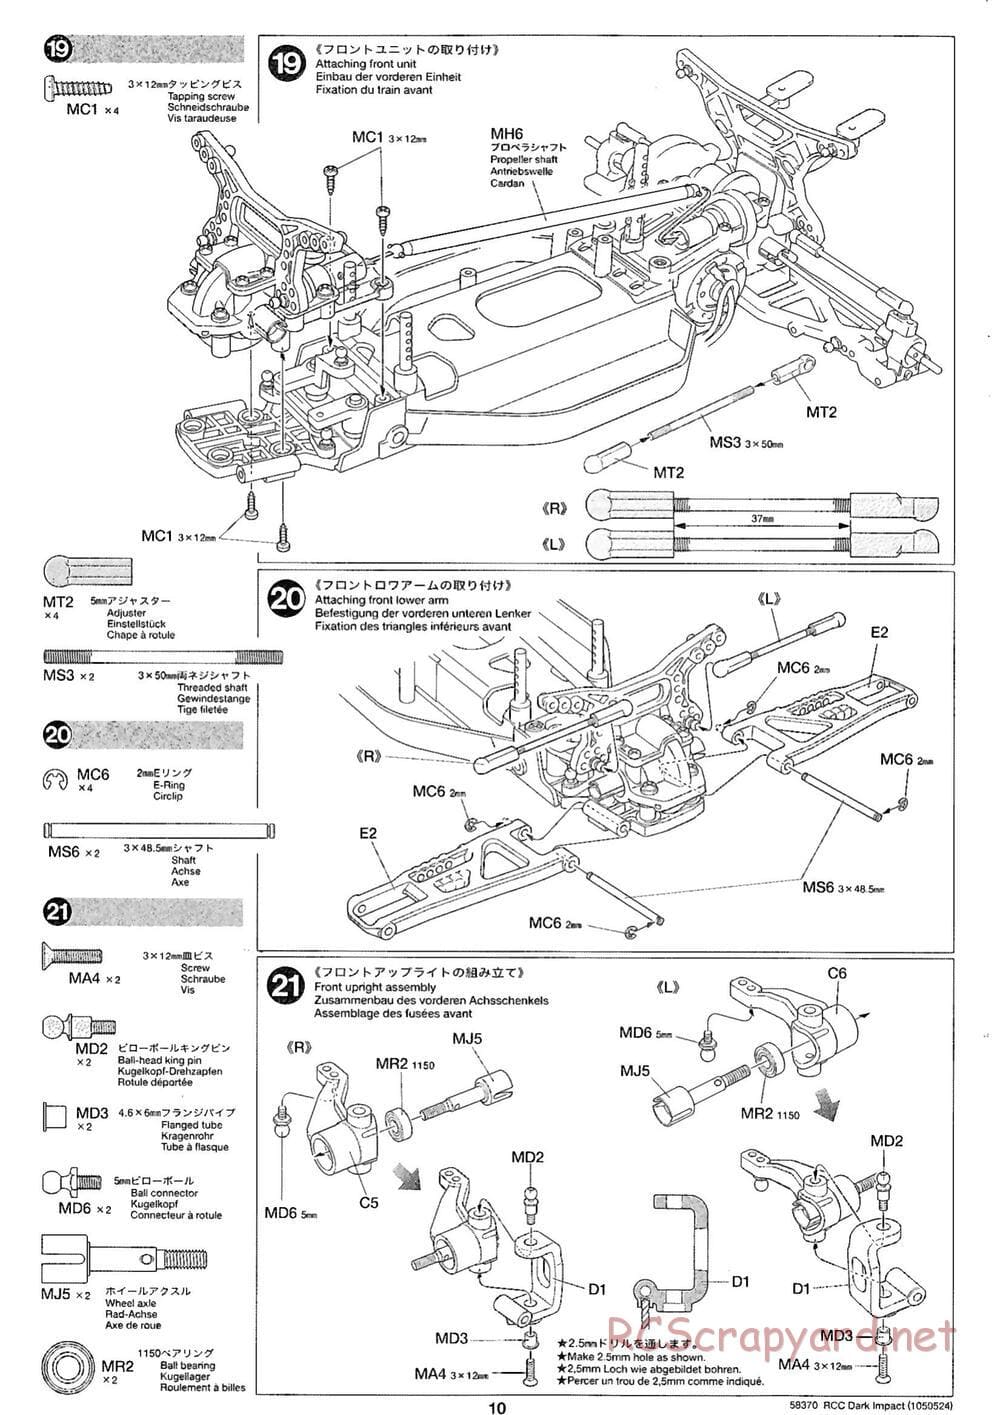 Tamiya - Dark Impact Chassis - Manual - Page 10